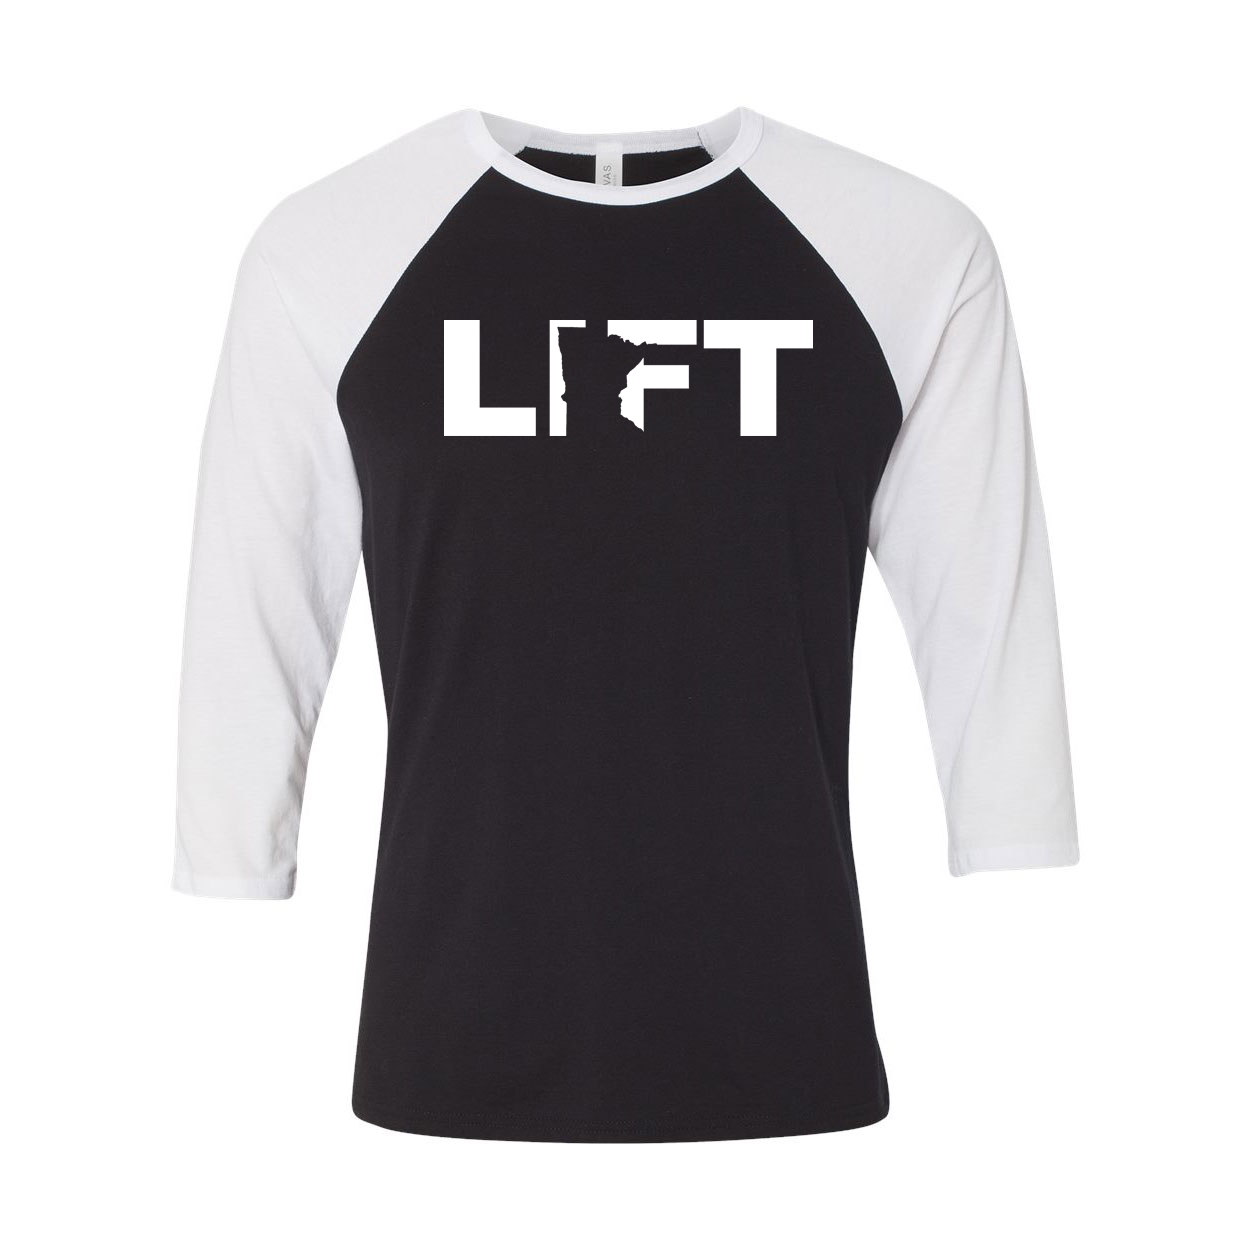 Lift Minnesota Classic Raglan Shirt Black/White (White Logo)